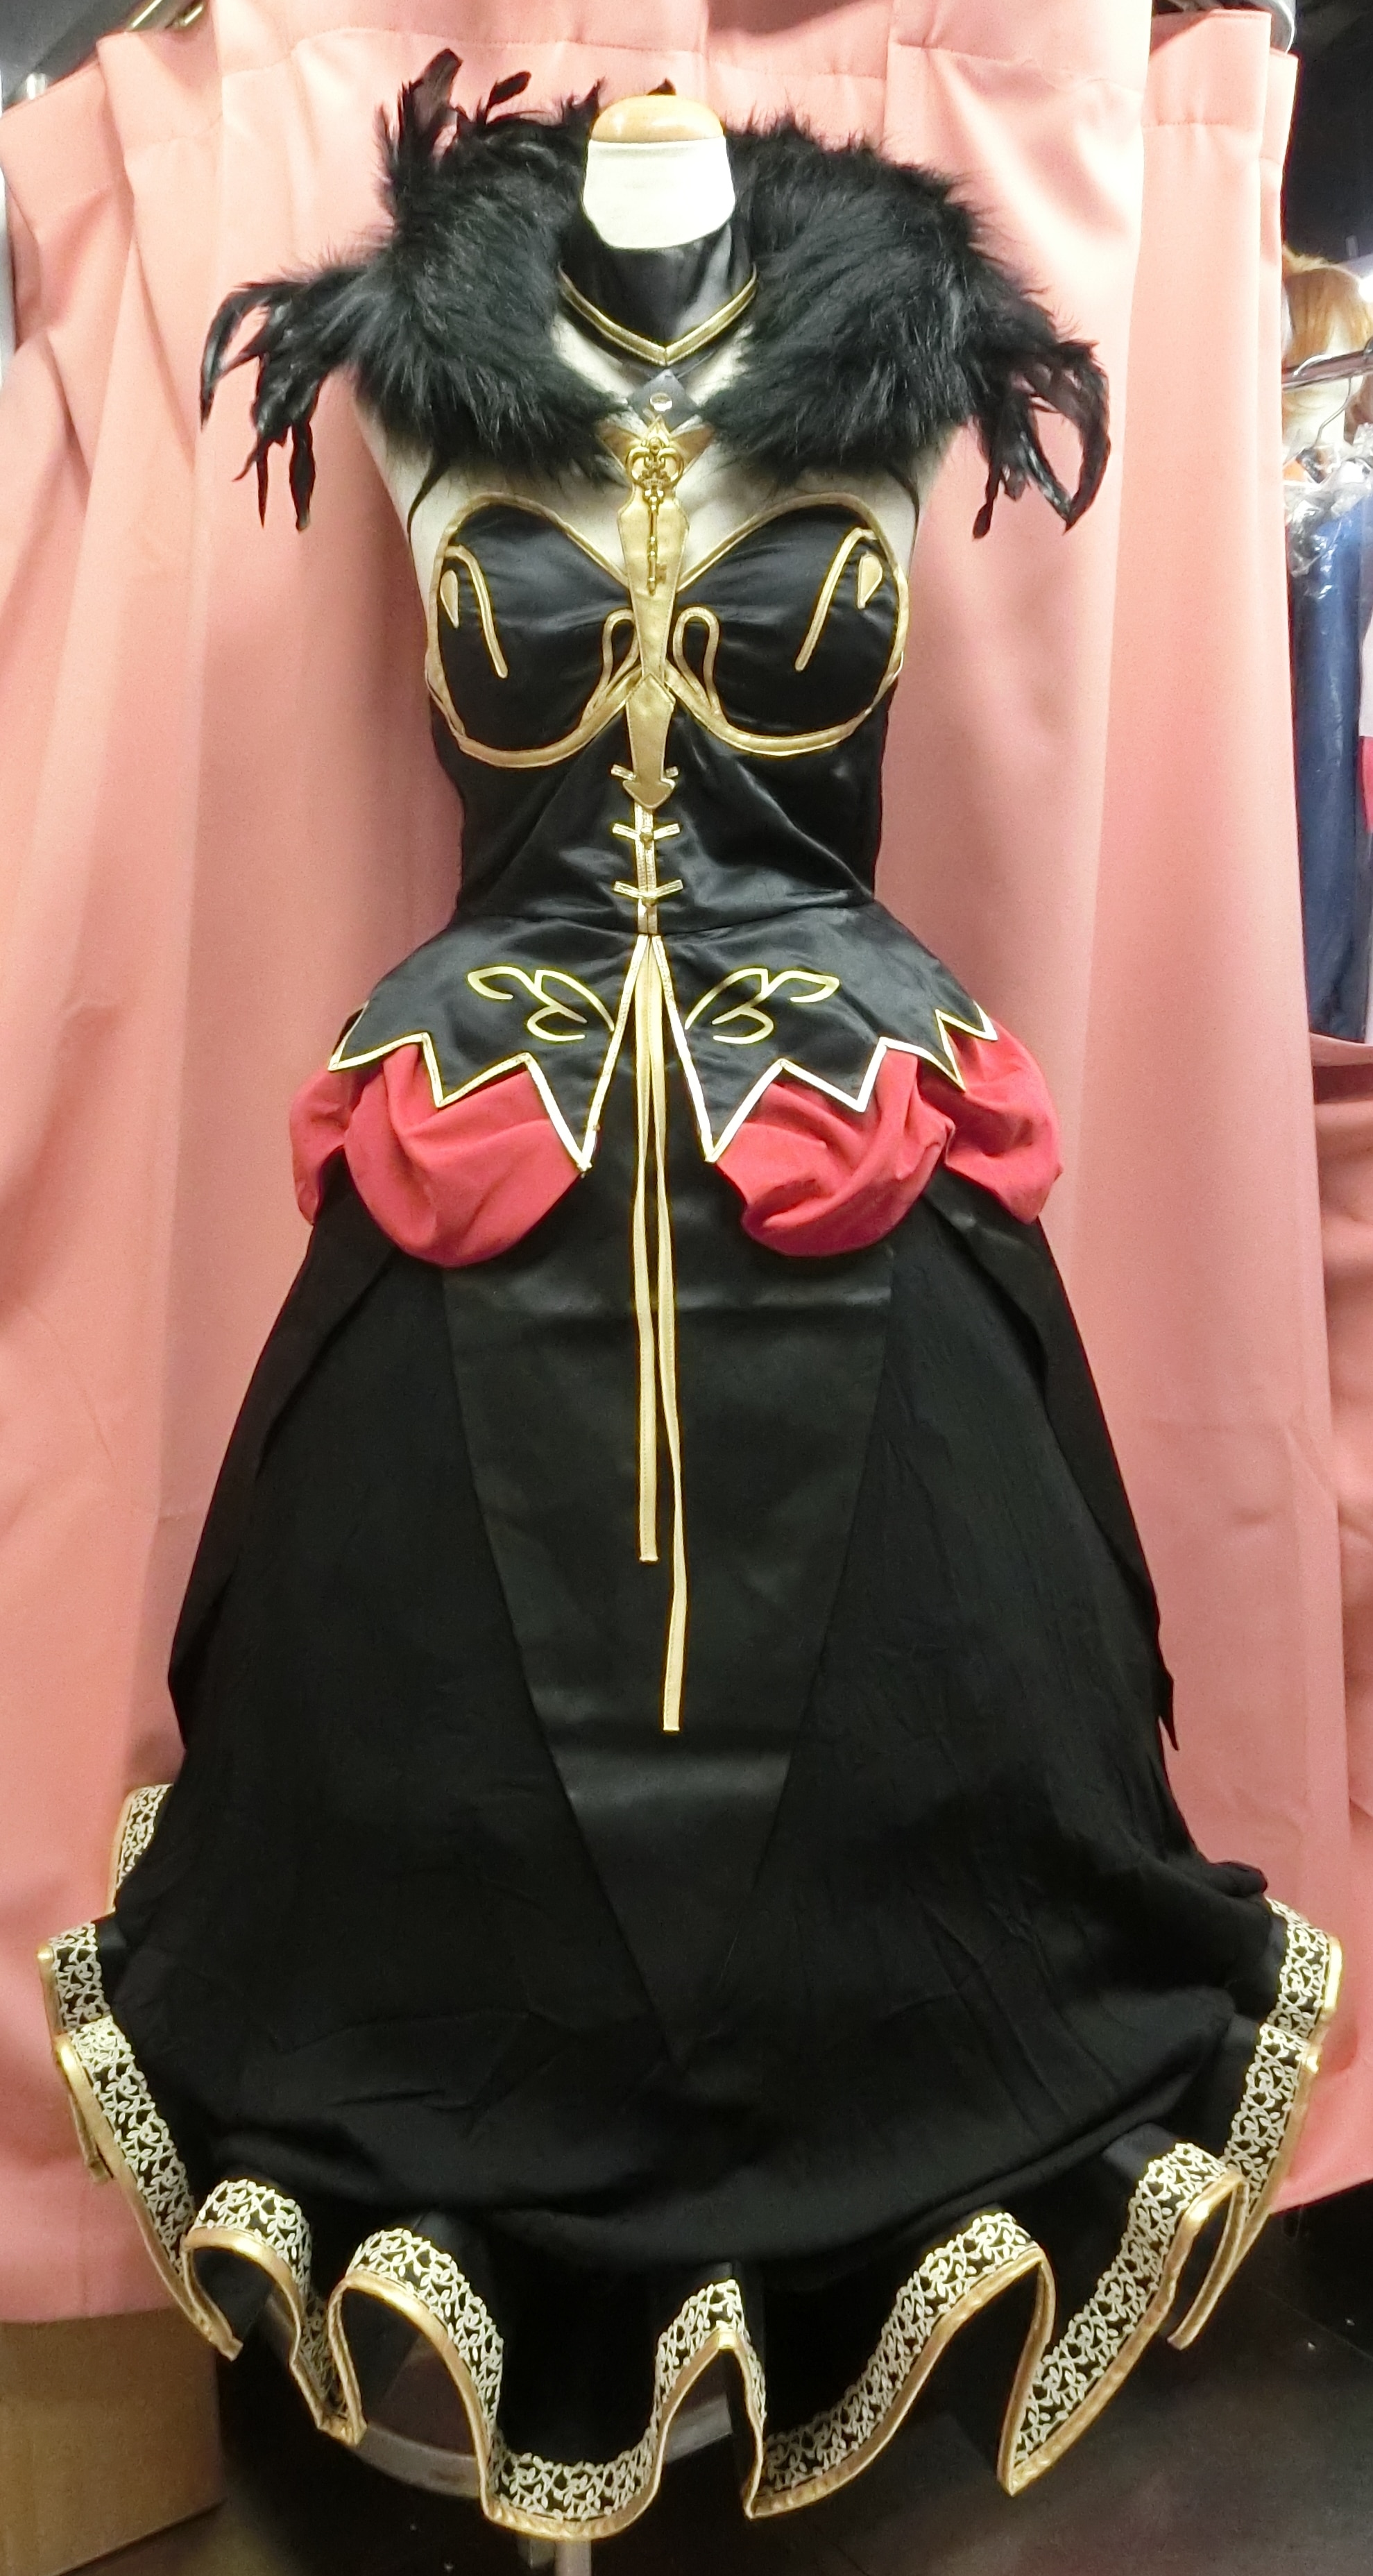 サークル製 Fate Grand Order Fgo セミラミス コスプレ衣装 未着用品 まんだらけ Mandarake